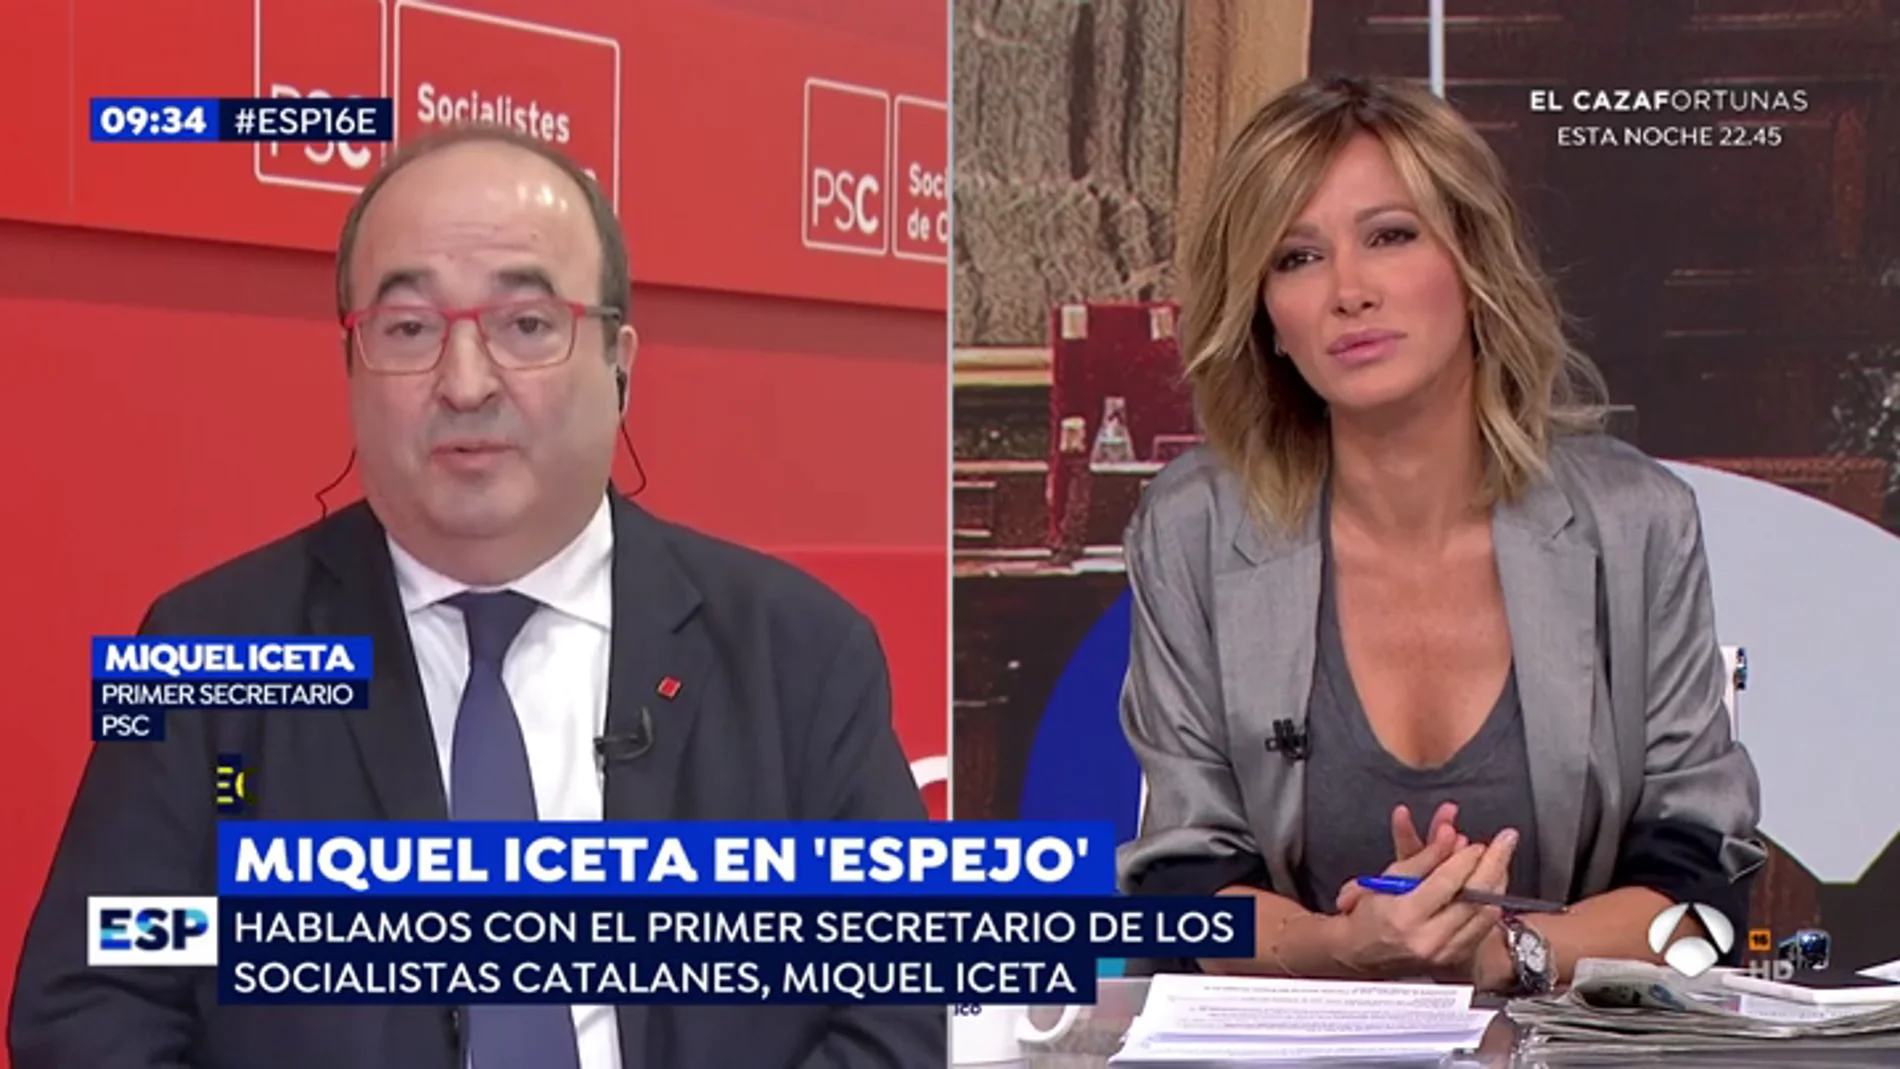 Miquel Iceta, ante las acusaciones del PP y Ciudadanos sobre Torra: "Si consideran que estoy fuera de la ley, que me lleven a los tribunales"